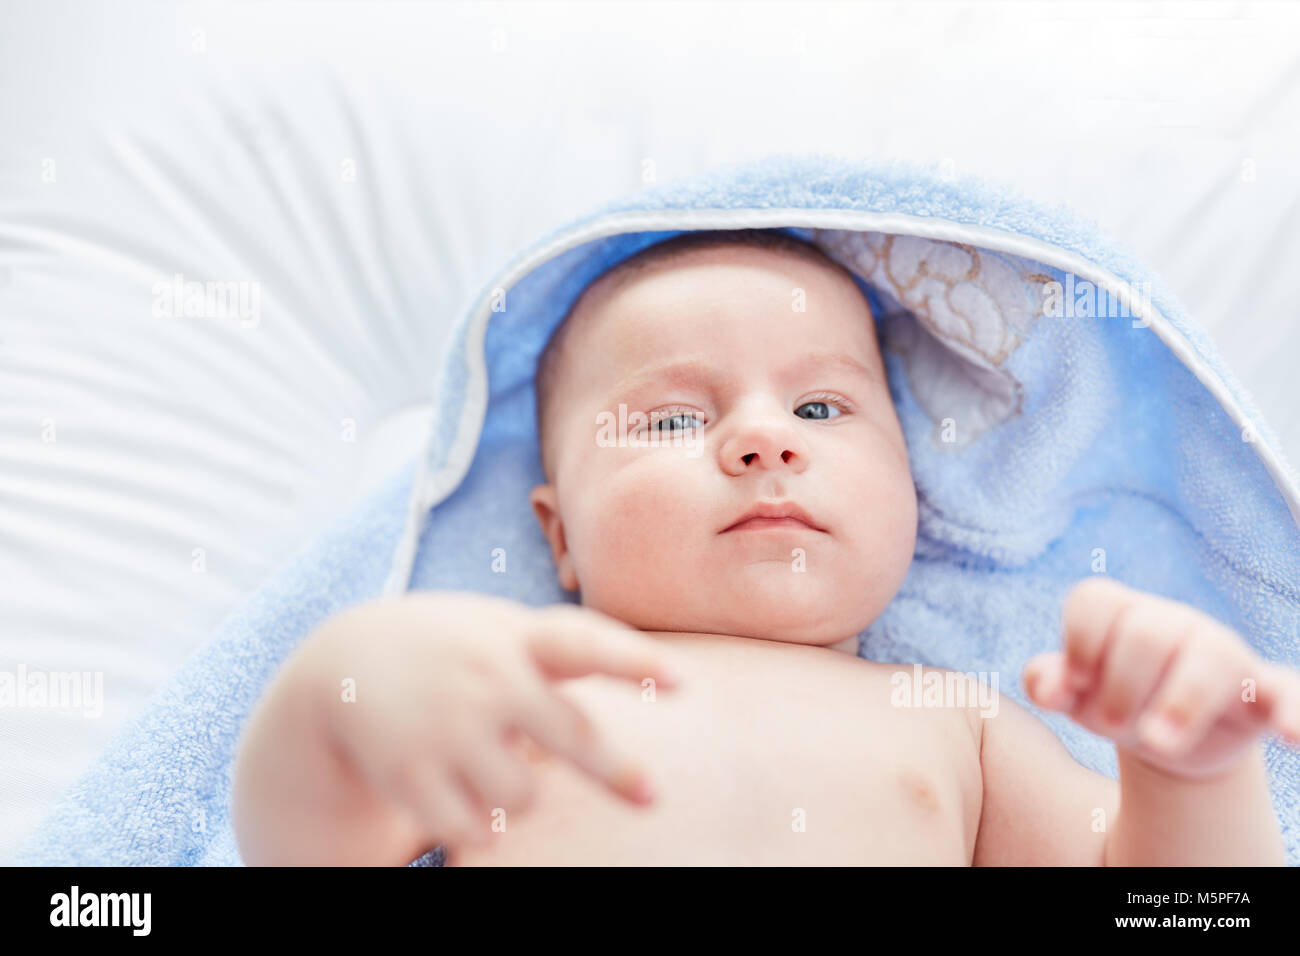 Newborn cute baby looks alert and awake Stock Photo